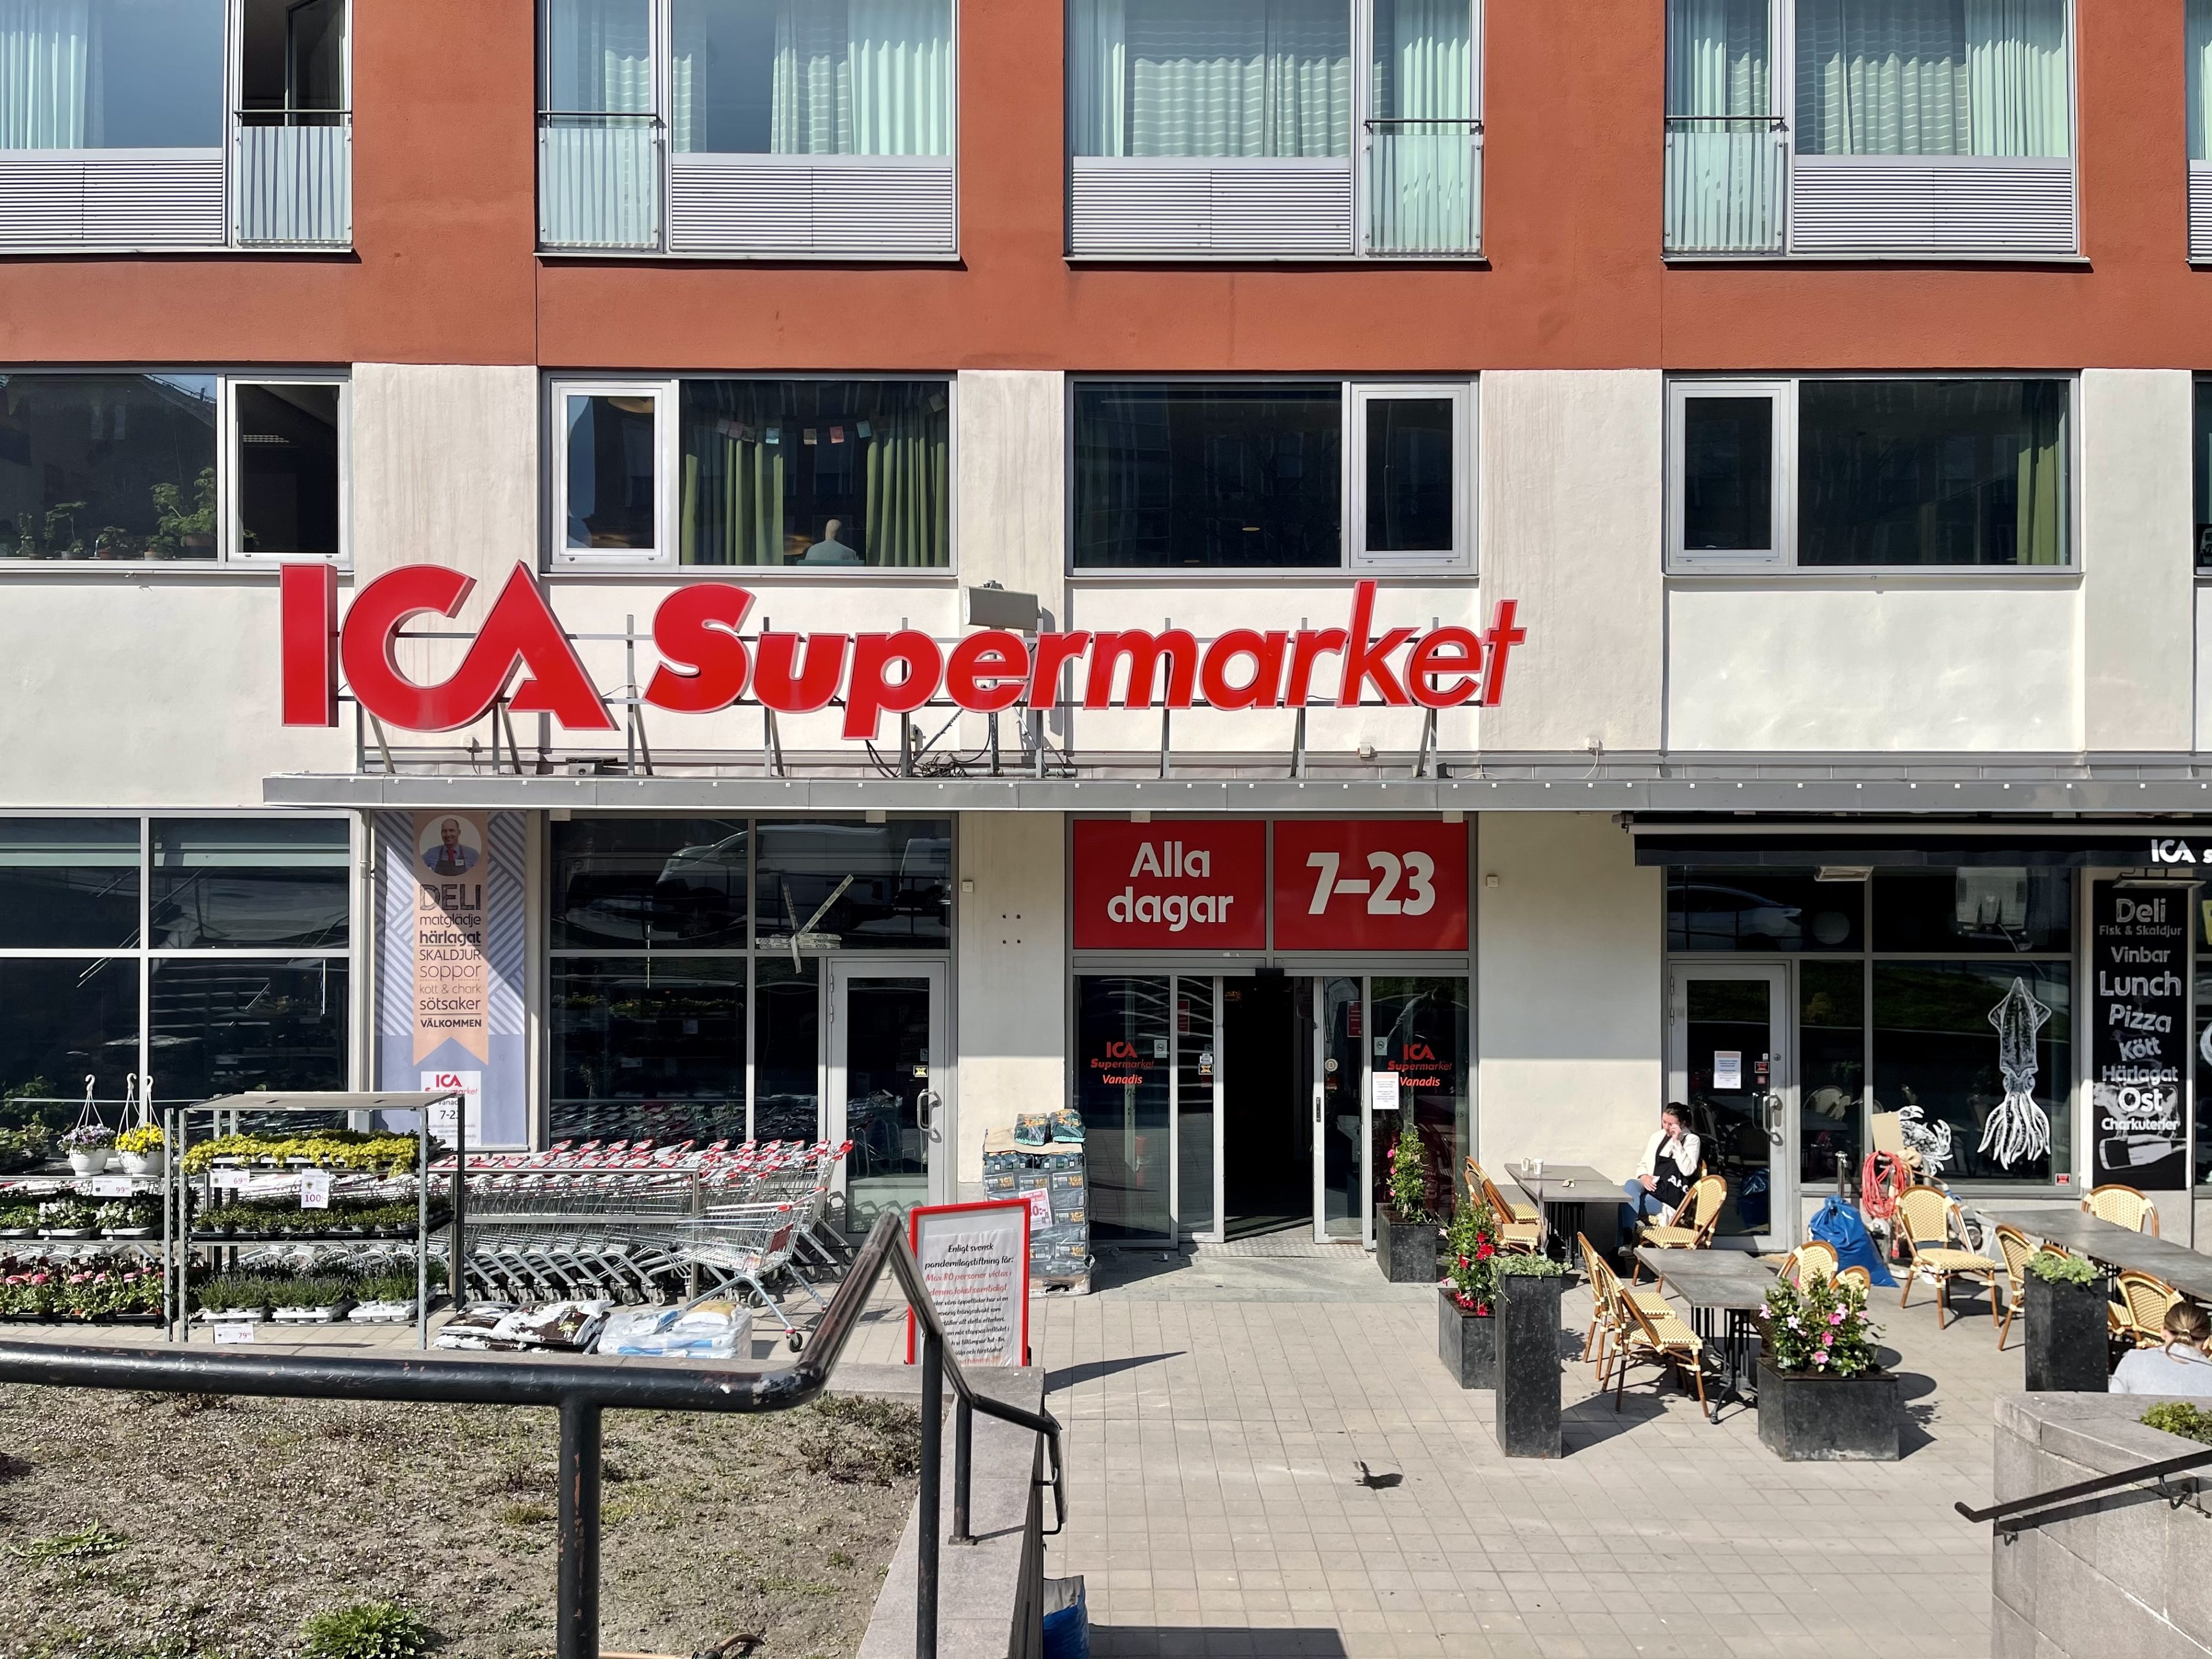 ICA Supermarket Vanadis